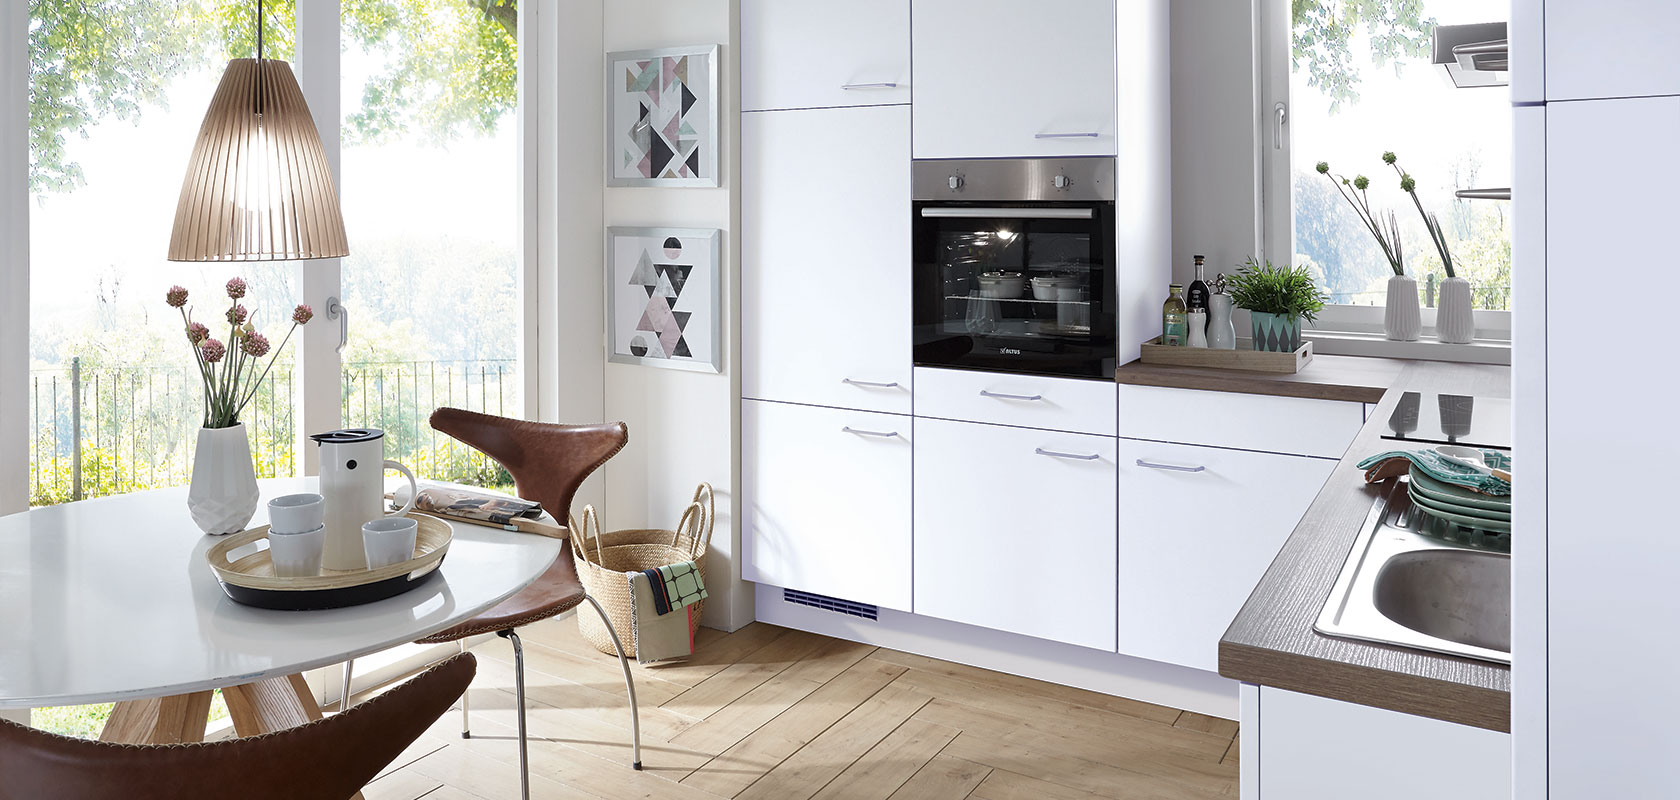 Luminoso, moderno interno cucina con armadietti bianchi puliti, elettrodomestici integrati e un'accogliente area pranzo con un tavolo rotondo che si affaccia su una vista soleggiata del giardino.